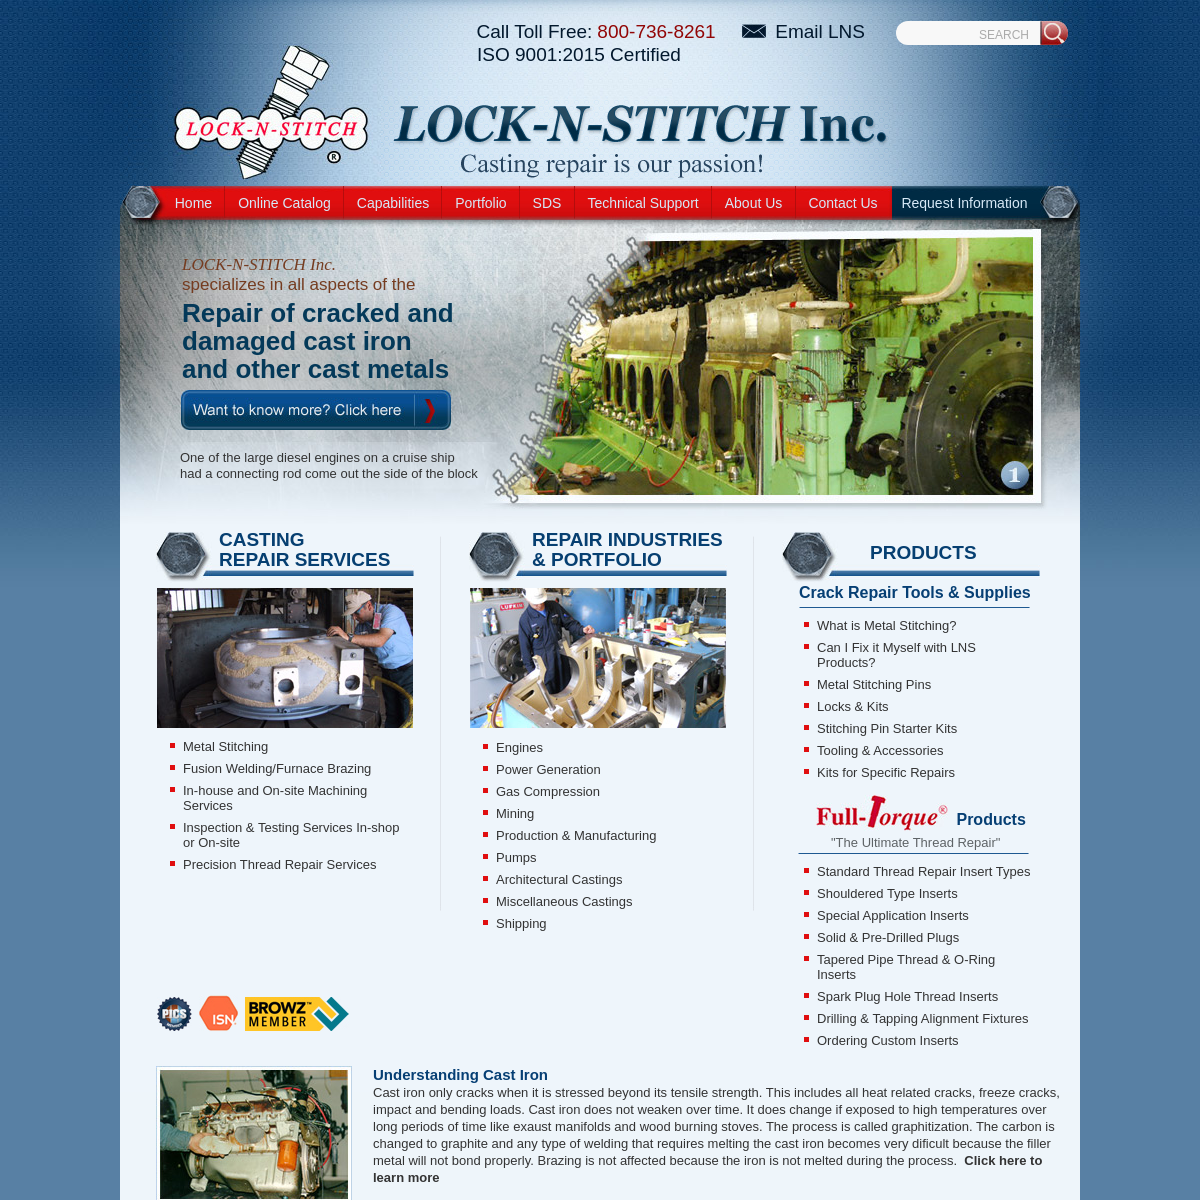 Metal Stitching & Thread Repair Inserts. - Turlock , CA - LOCK-N-STITCH, Inc